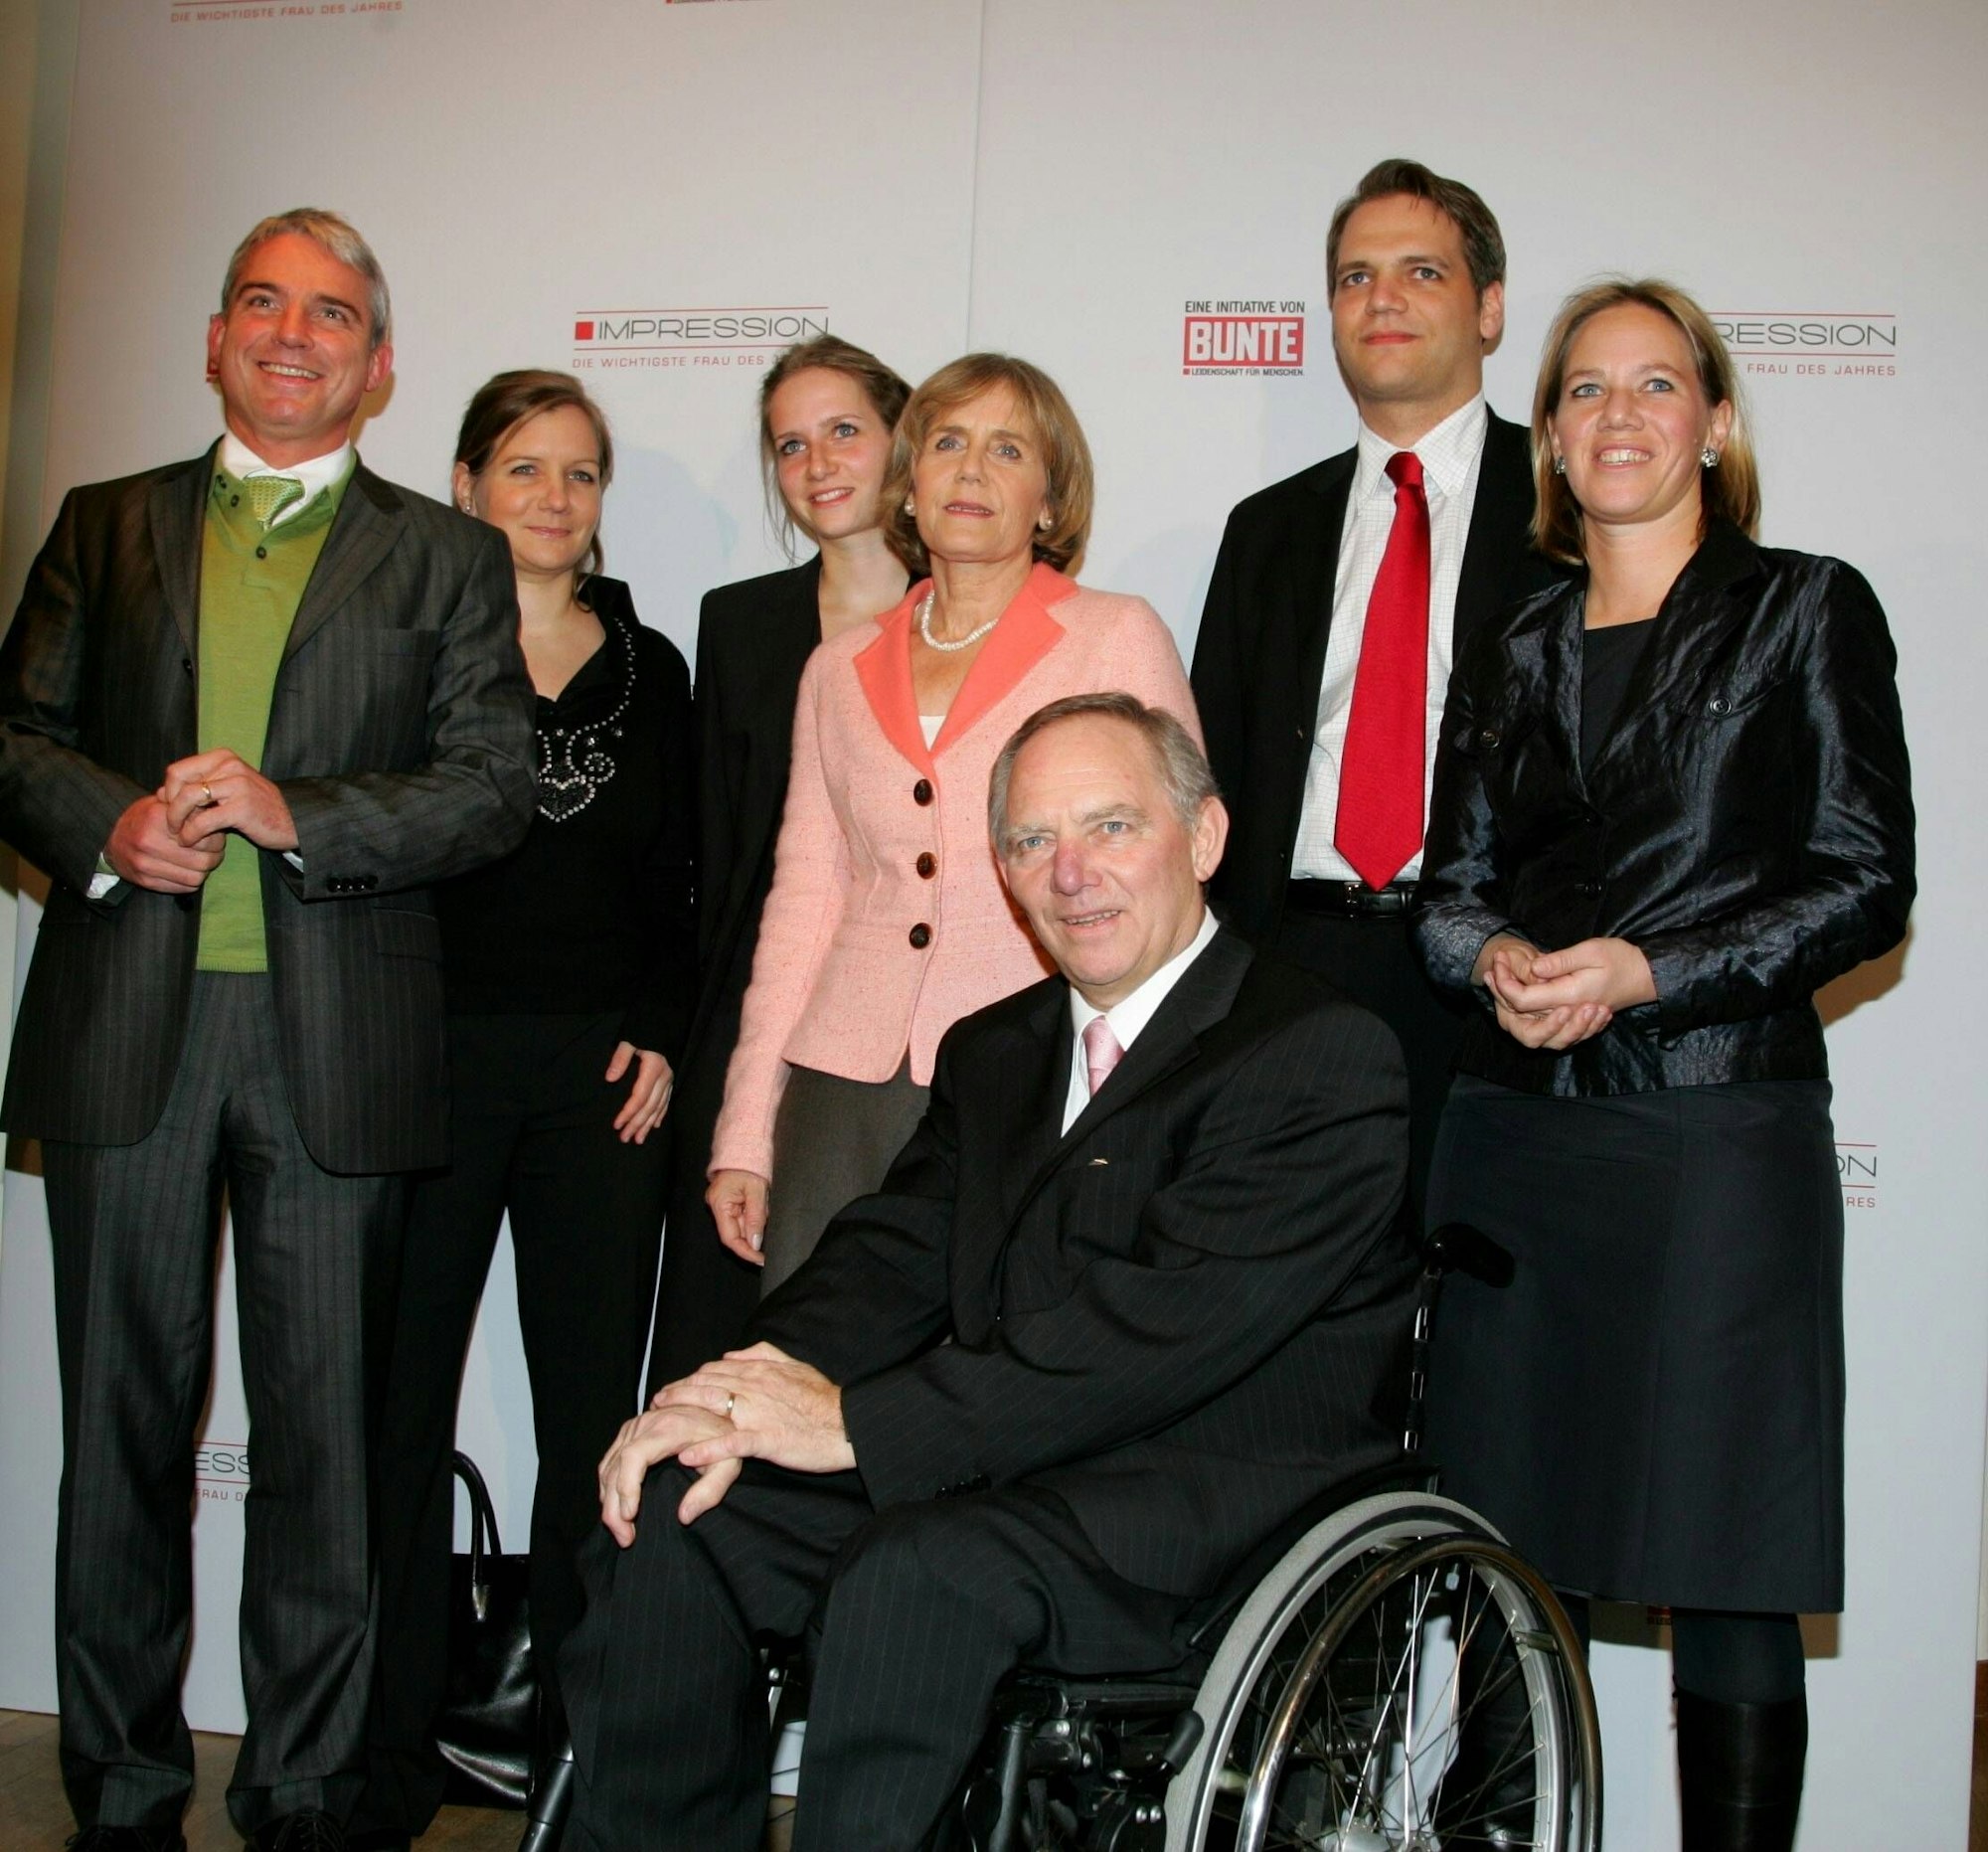 Der im Rollstuhl sitzende CDU-Politiker Wolfgang Schäuble im Jahr 2006 auf einer Preisverleihung in Berlin mit seiner Familie (von links): Schwiegersohn Thomas Strobl, Tochter Anna, Tochter Juliane, Ehefrau Ingeborg, Sohn Hans-Georg und Tochter Christine.